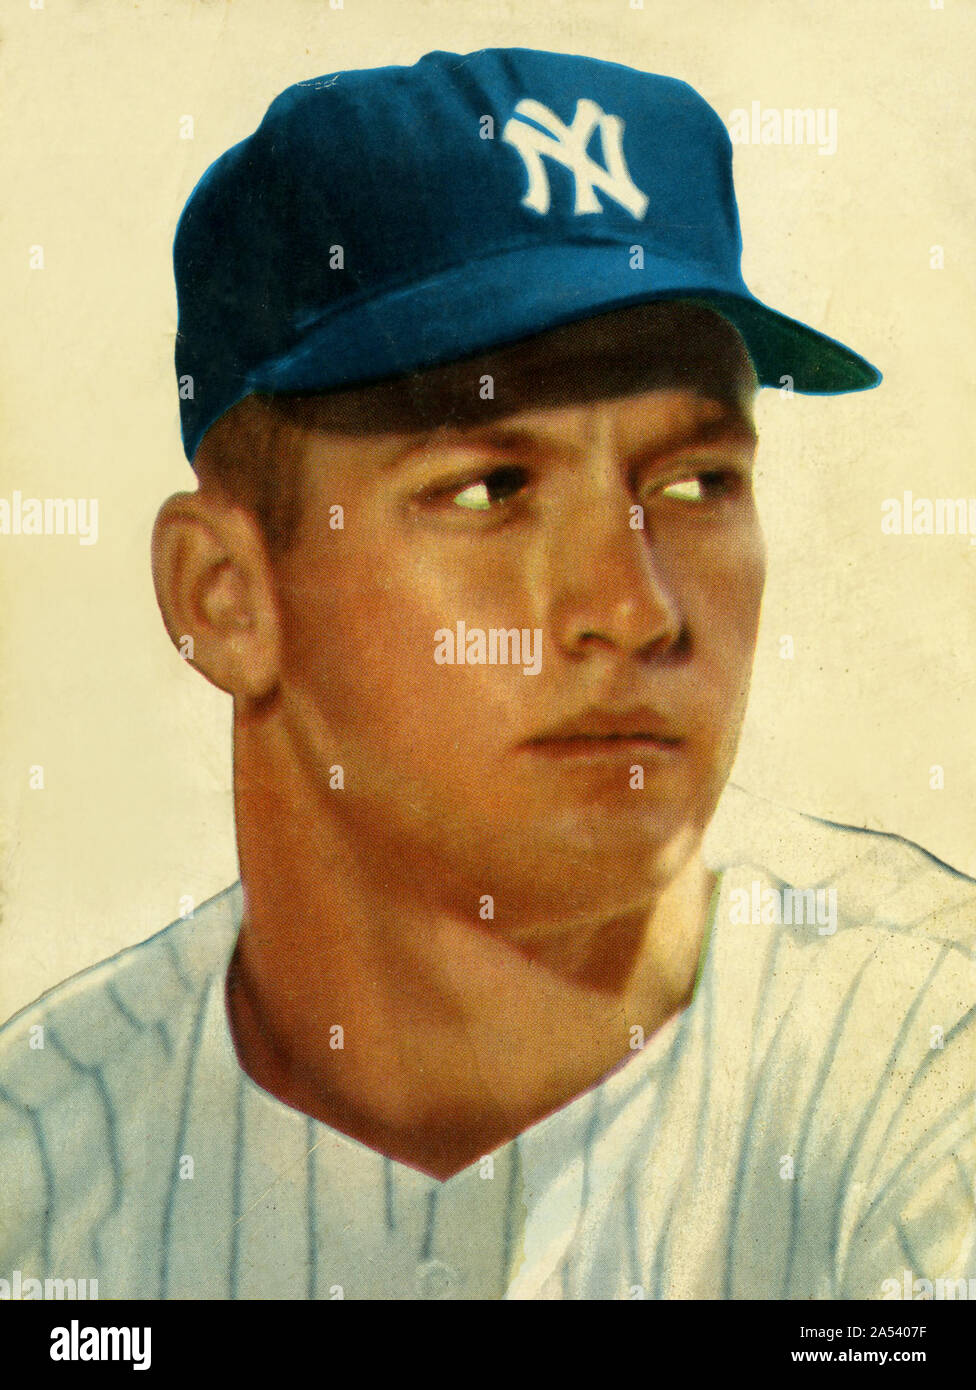 Vintage Farbe Porträt einer jungen Mickey Mantle die Hall of Fame Baseball spieler mit der New York Yankees in den 1950er und 1960er Jahren. Stockfoto